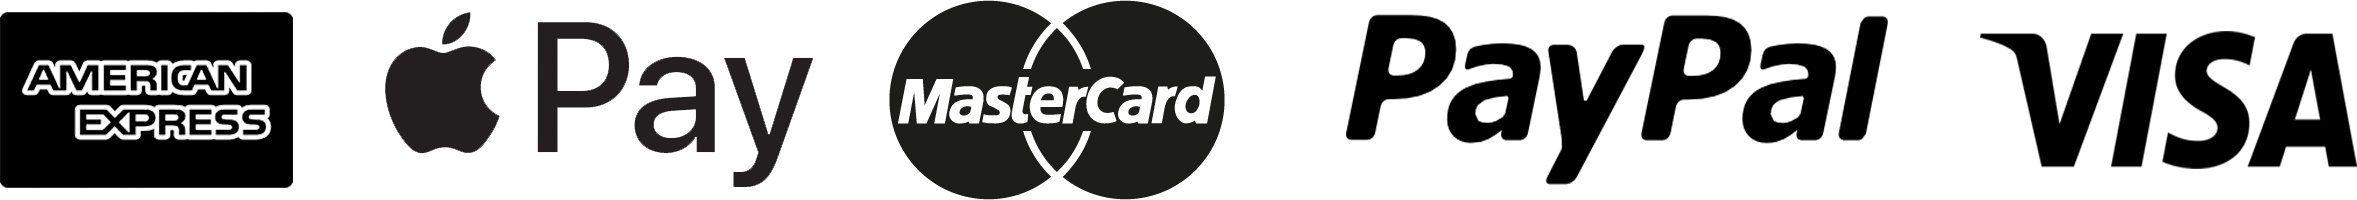 PayPal Visa MasterCard Logo - LogoDix